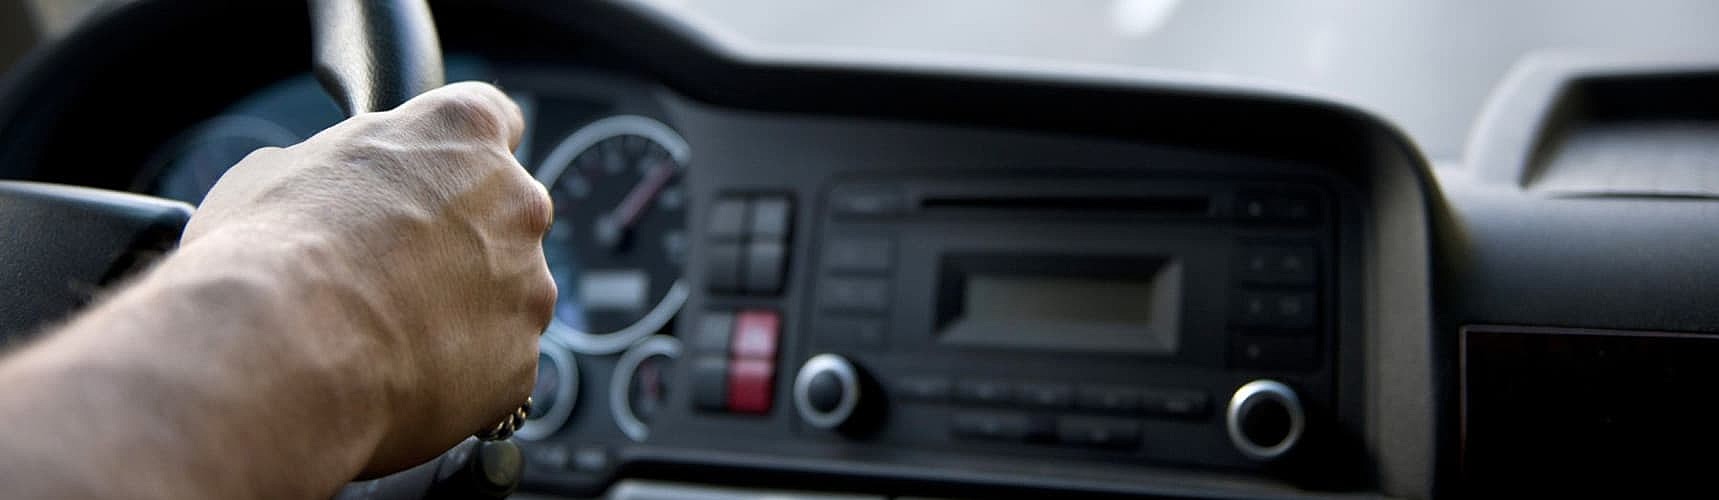 tipos de tacógrafo: painel de um veículo sendo guiado pelo motorista